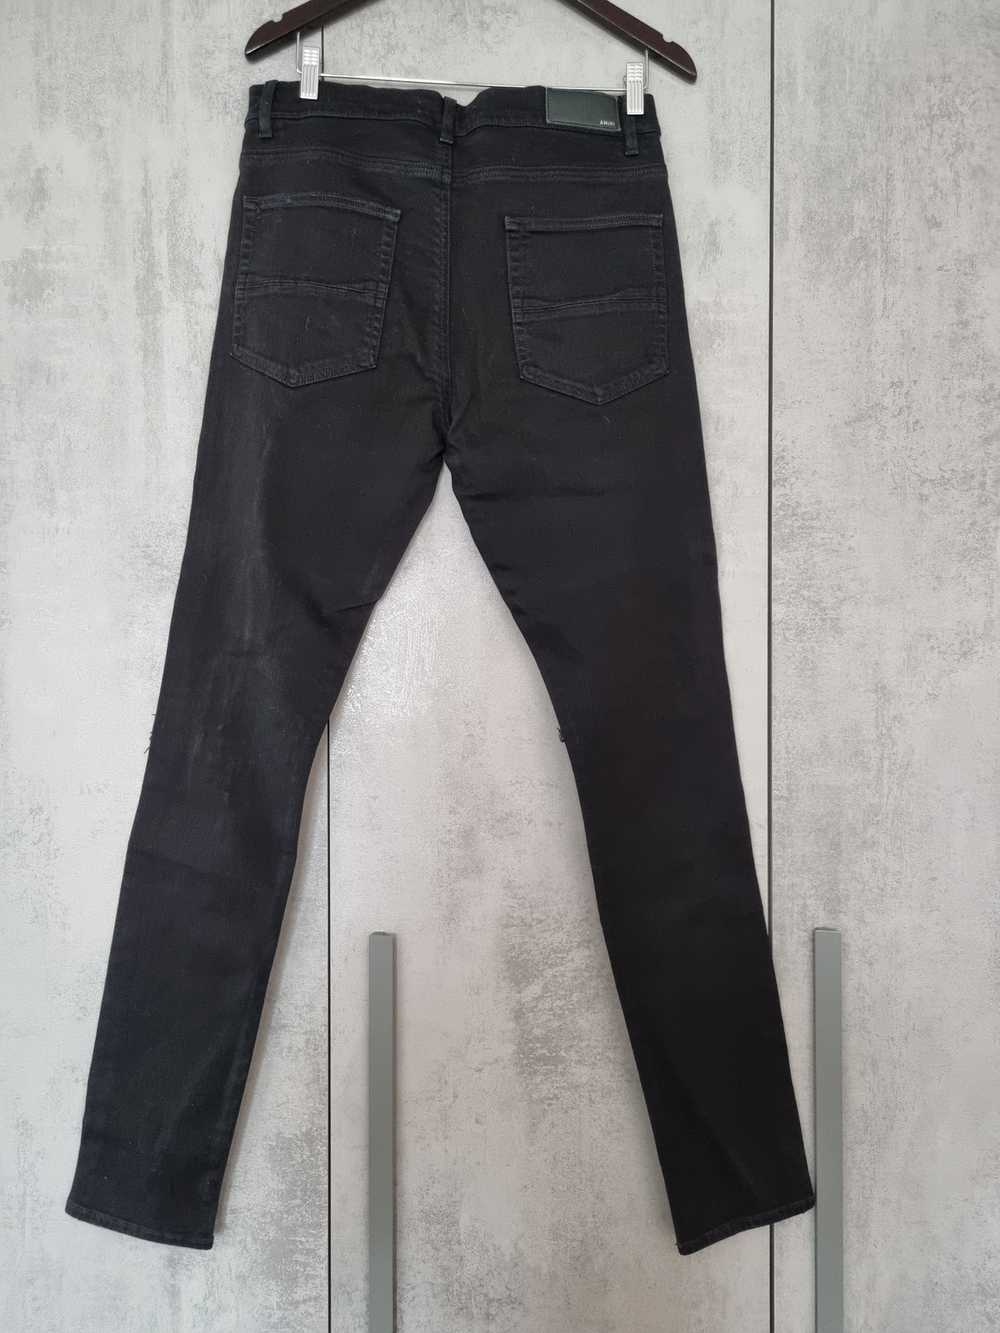 Amiri Amiri Mx1 Crystal Paisley jeans - image 2